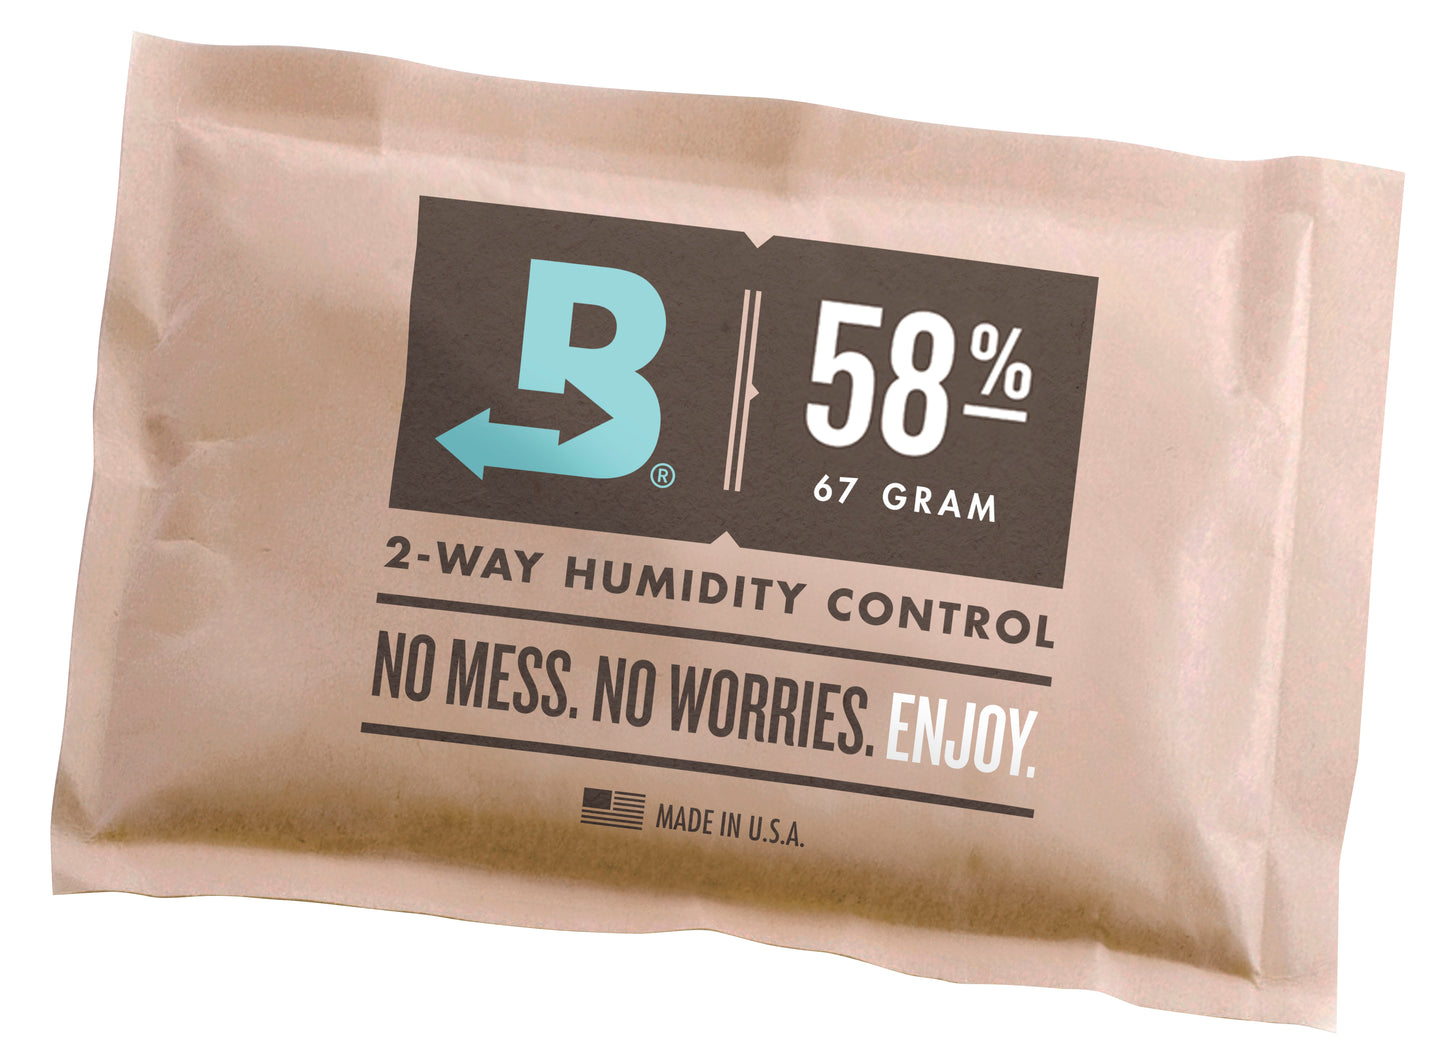 Boveda 2-Way Humidity Packs 58%